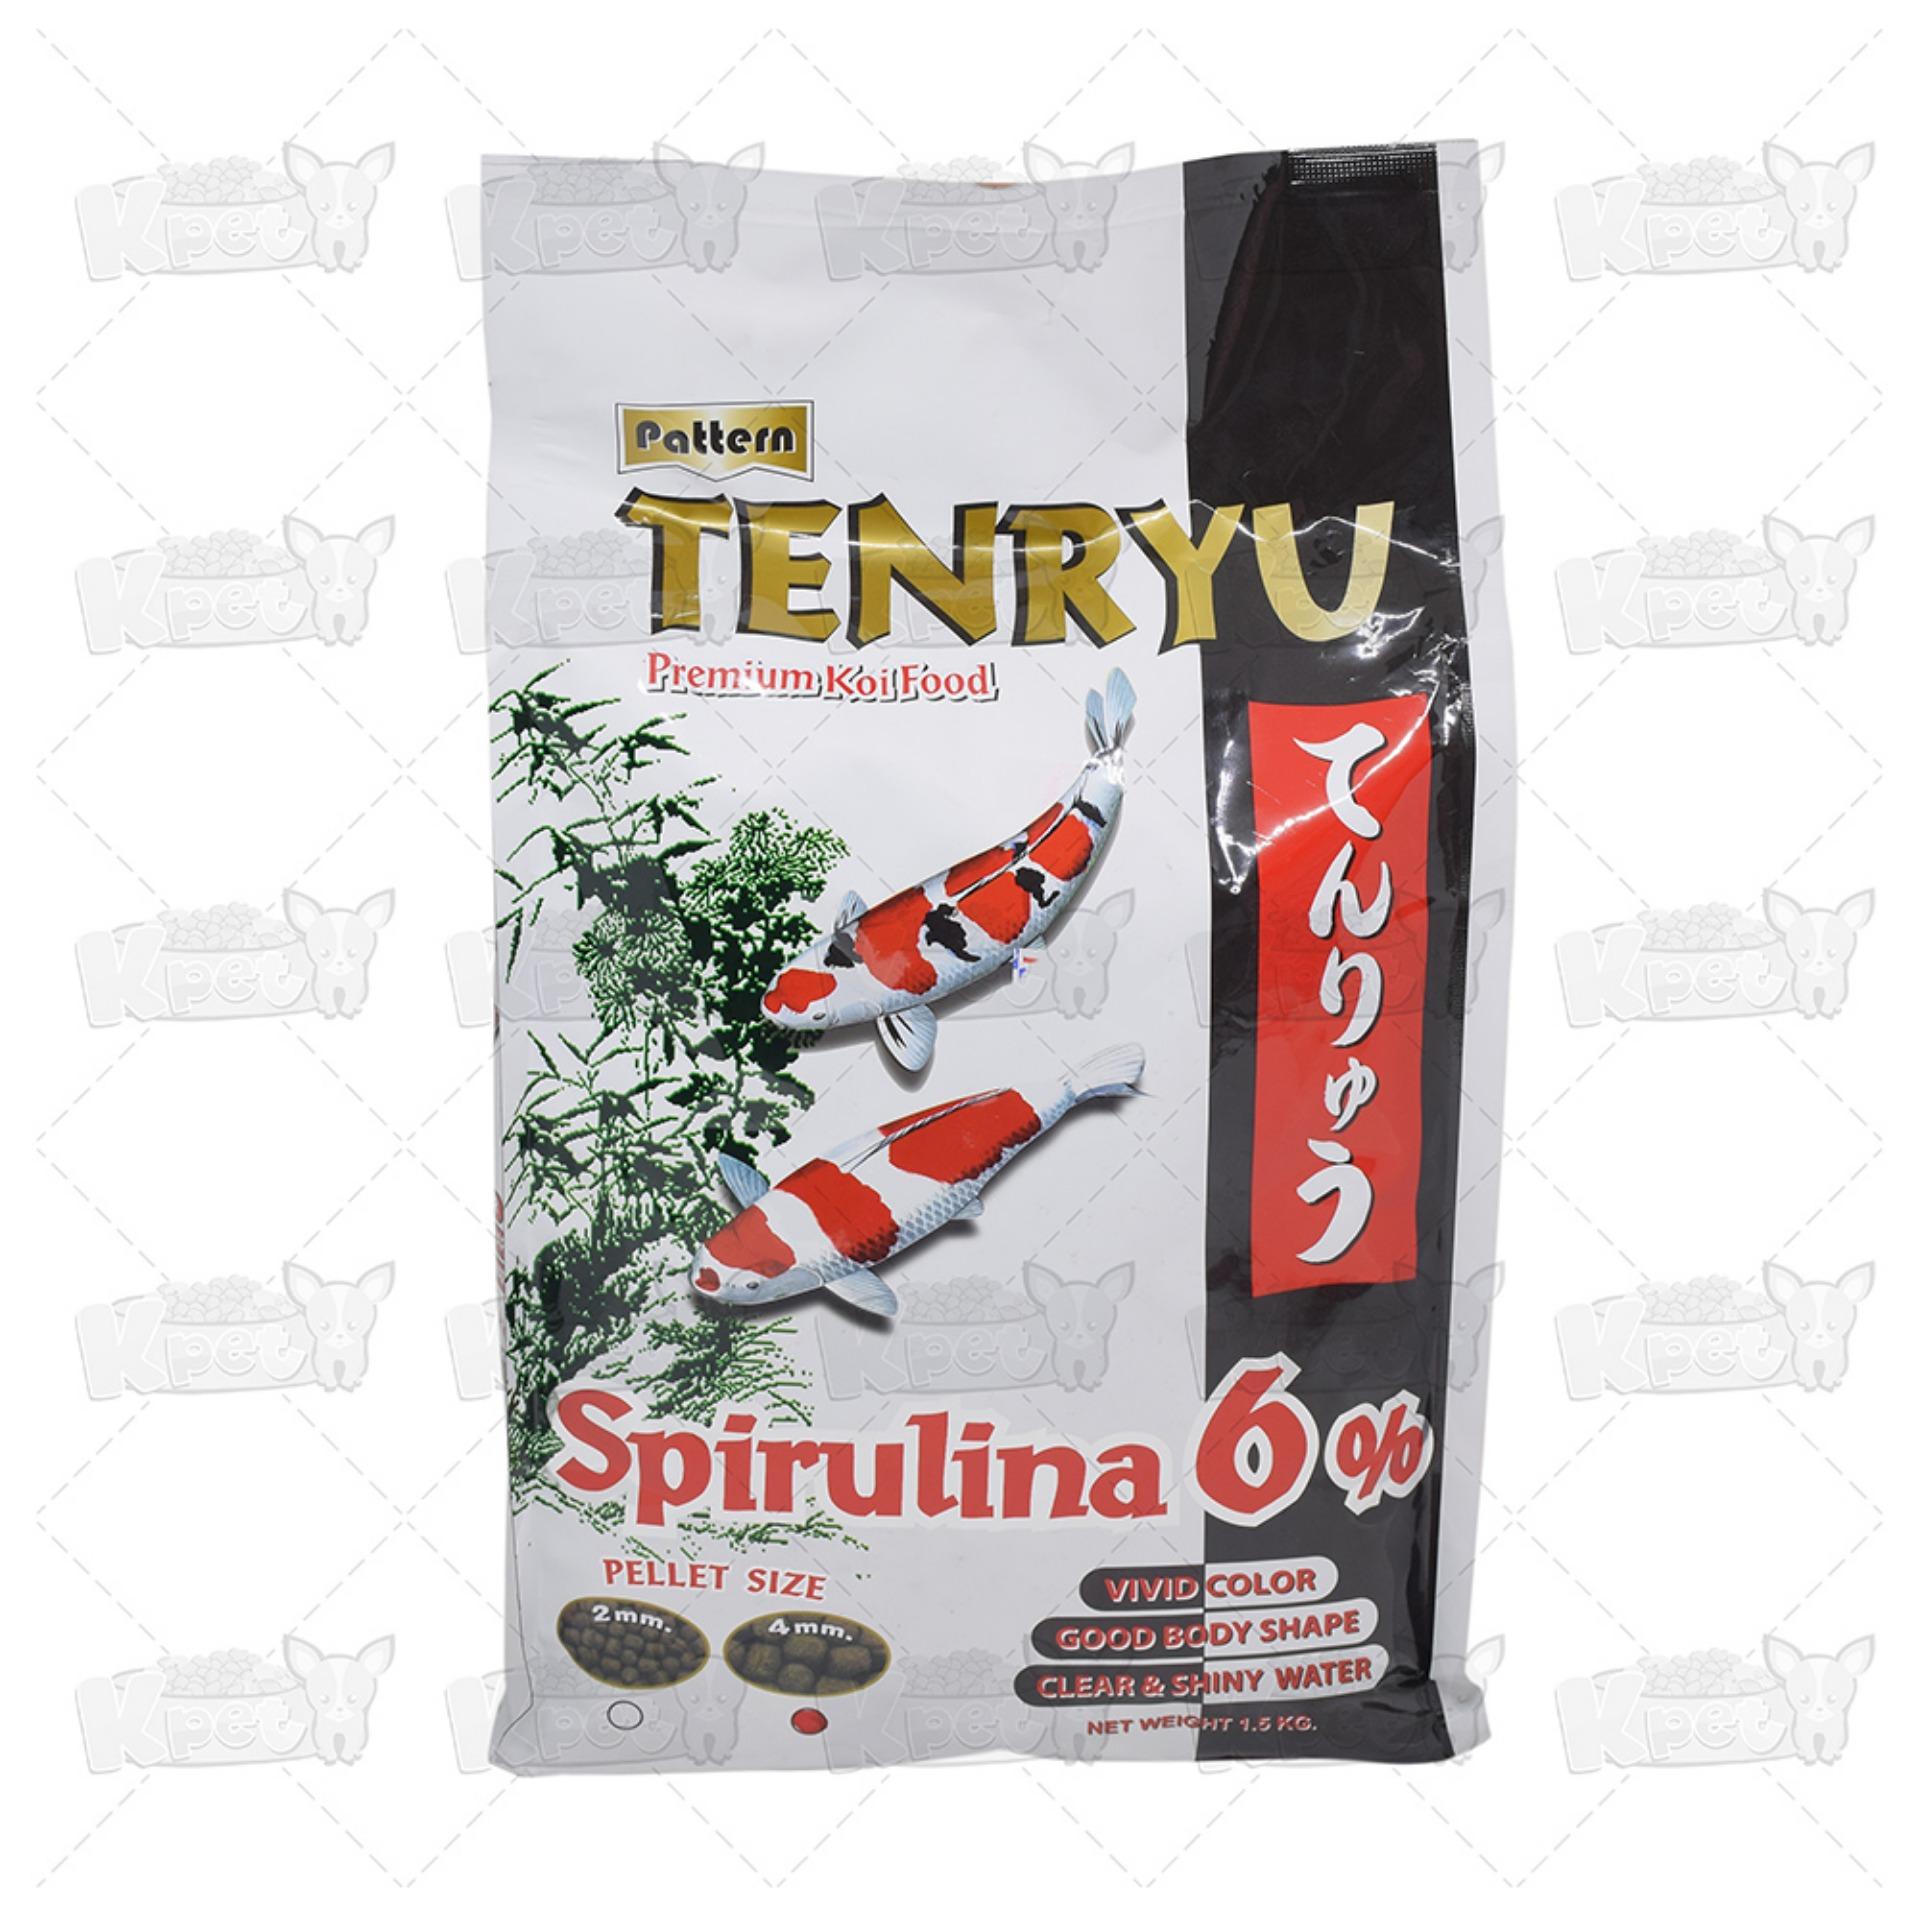 Tenryu Premium 7 Kg. อาหารปลา อาหารปลาคาร์ฟ ไม่ทำให้น้ำขุ่น Size L ขนาดเม็ด 4 มม. (7 กิโลกรัม/กระสอบ) แถมฟรี! 500 กรัม